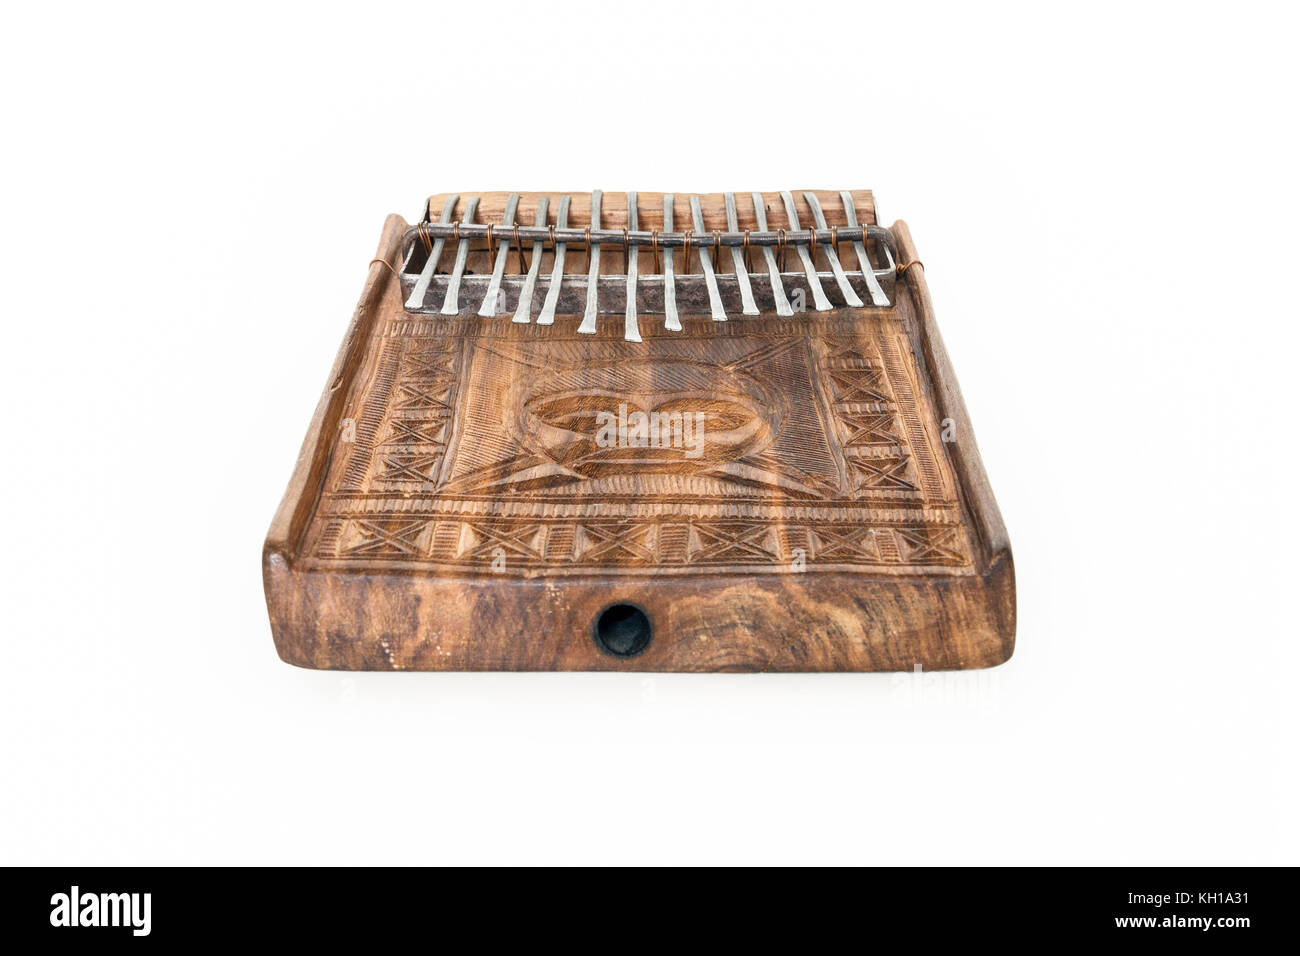 Mbira traditionnelle africaine, un instrument de musique composé d'une caisse de résonance en bois et métal volets clés, du Zimbabwe Banque D'Images